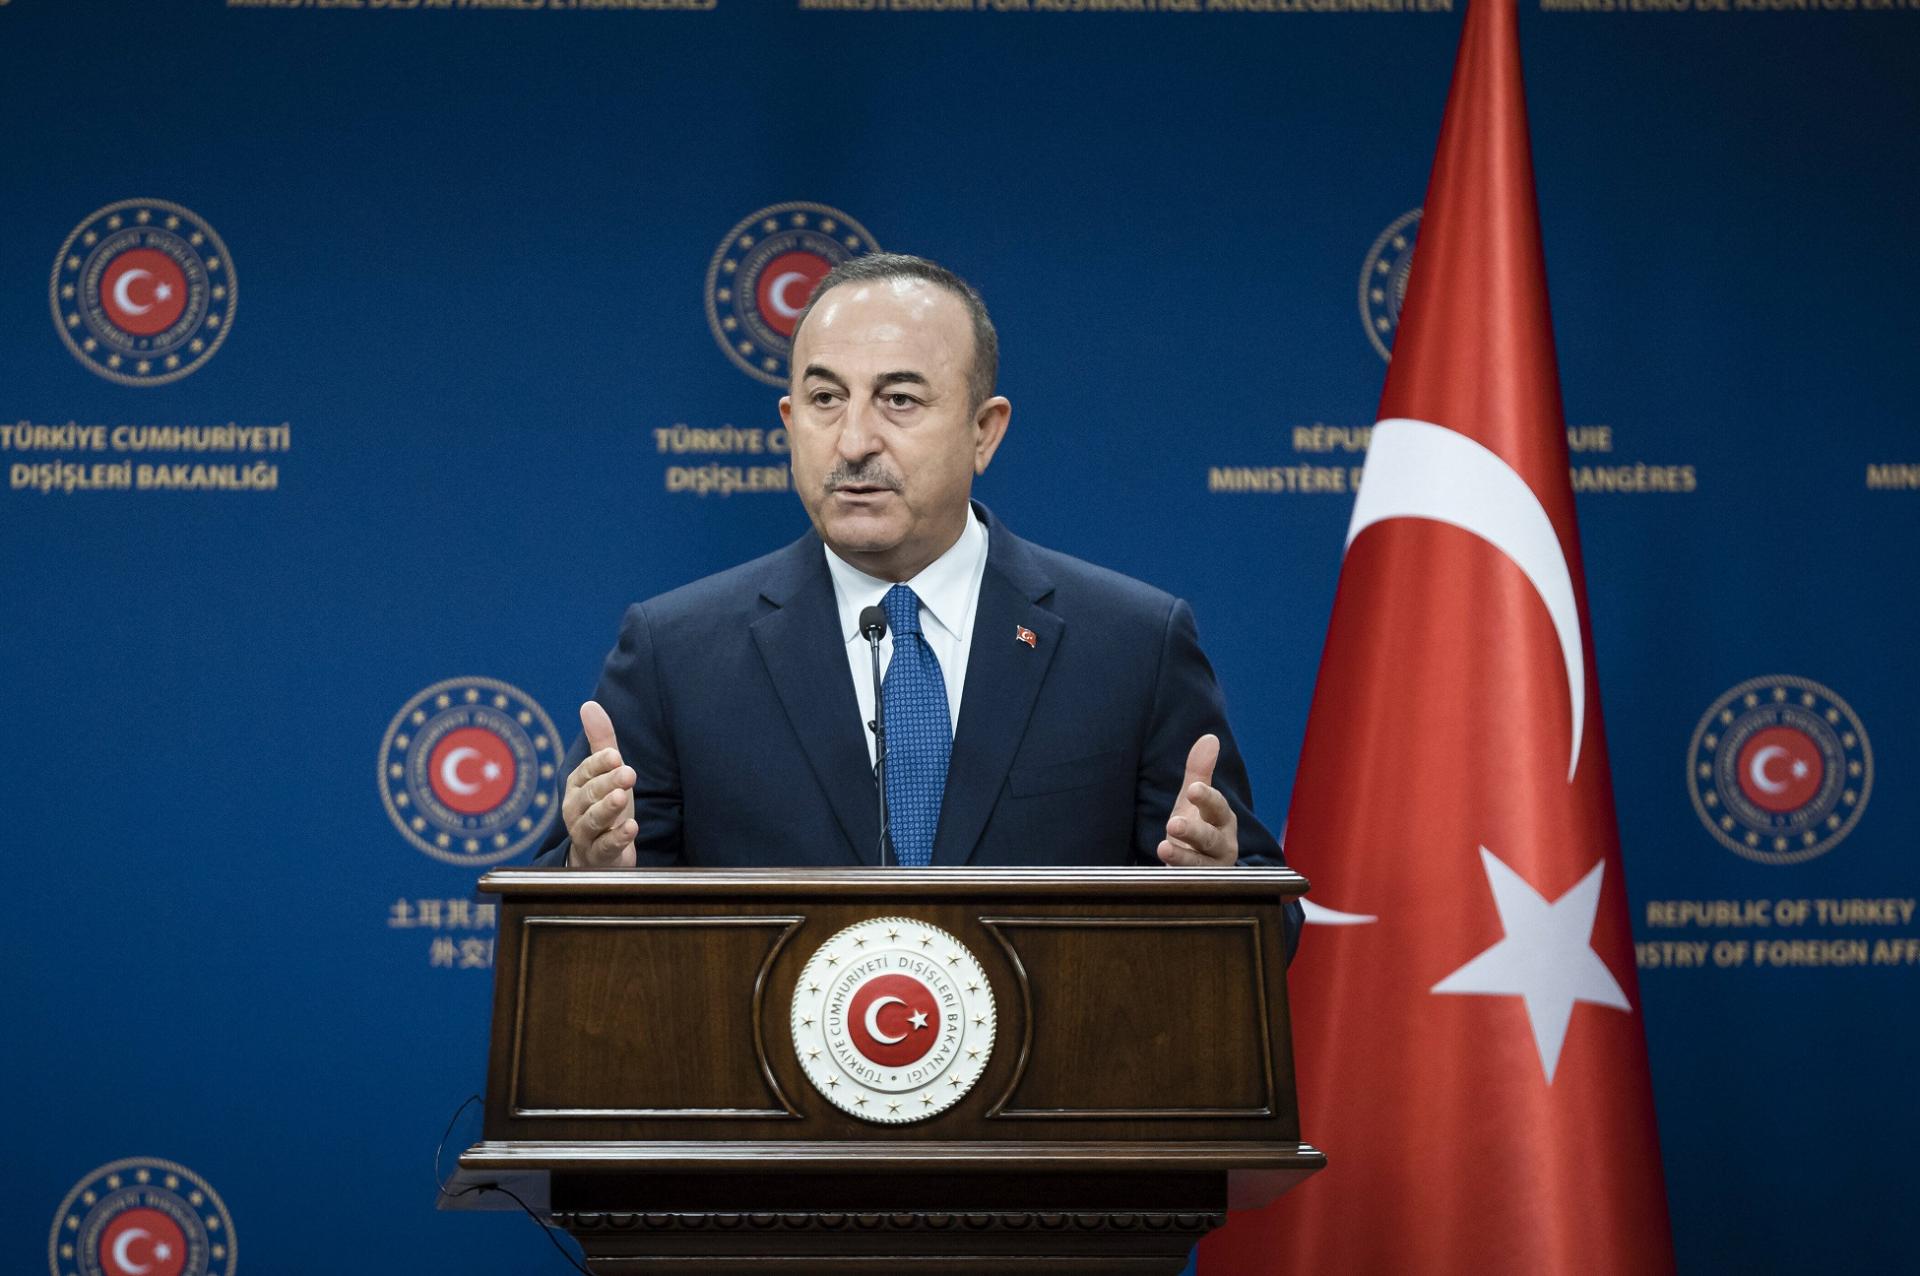 Turquía reafirma su apoyo al desarrollo y la prosperidad de Afganistán